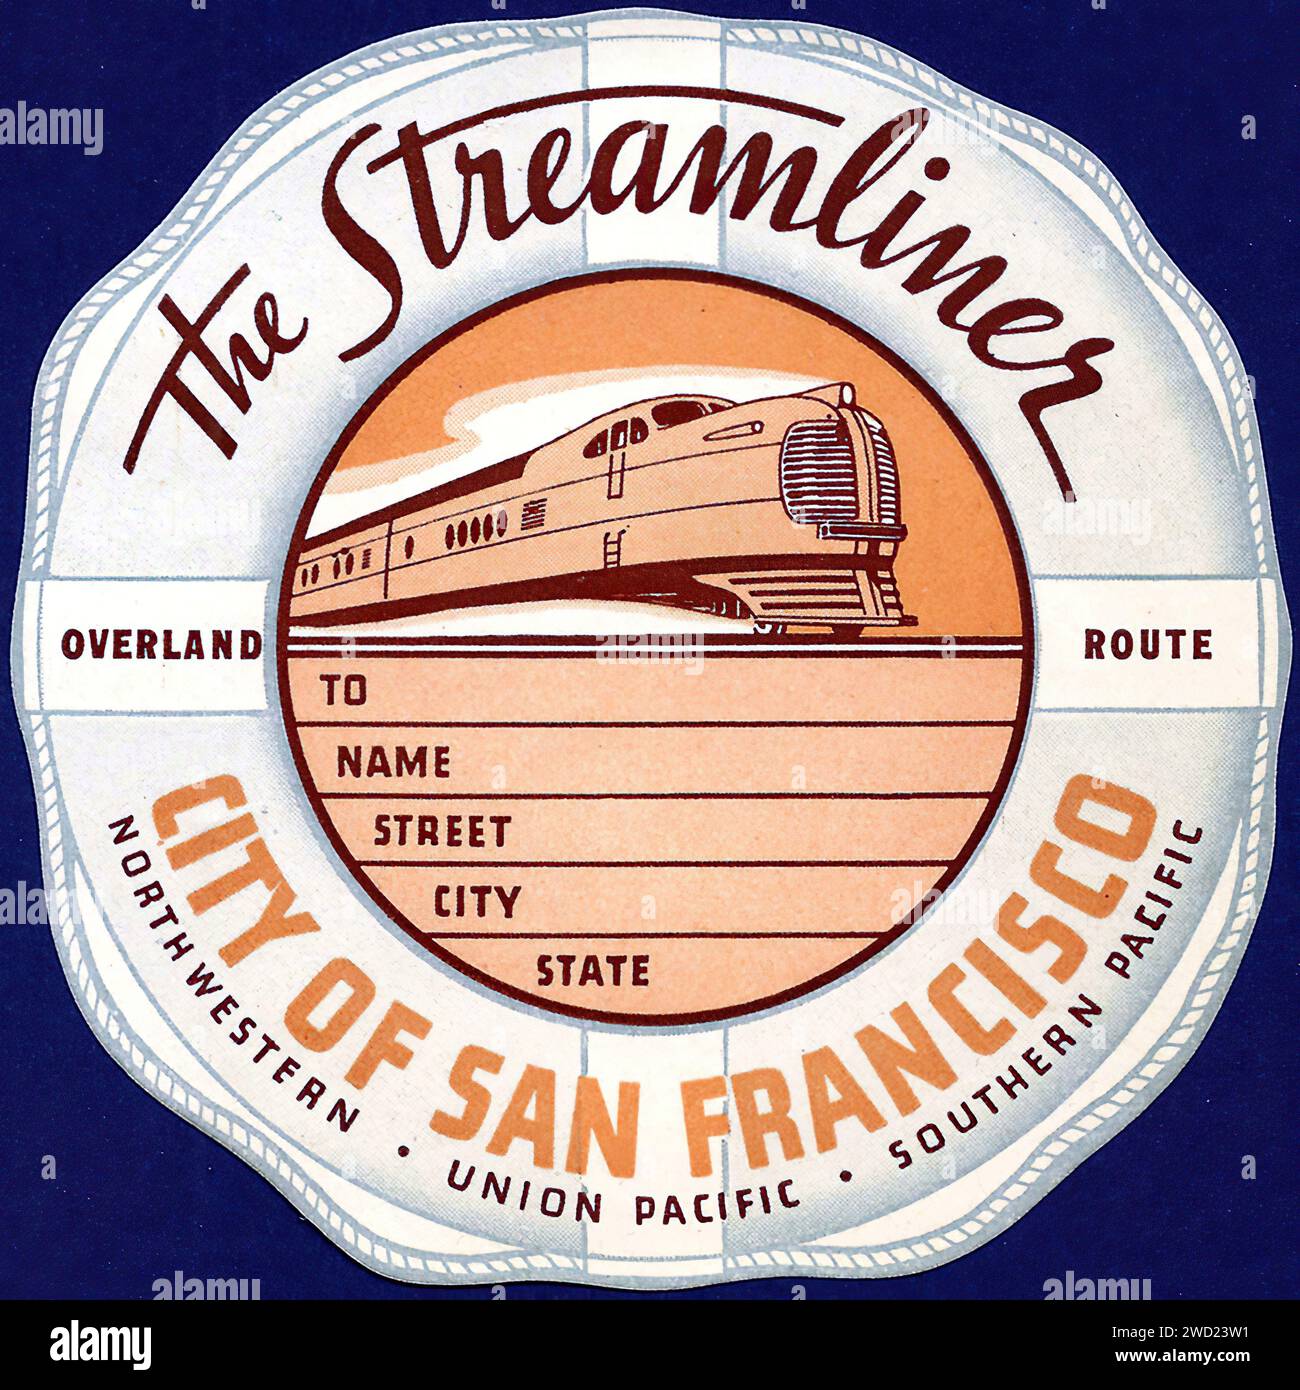 "LA VILLE DE San FRANCISCO" cette étiquette présente le Streamliner "ville de San Francisco", utilisant le même format rond et la même typographie distinctive que ses homologues. L'image du train traduit sa nature épurée, et le choix des couleurs reflète l'identité de San Francisco. Il perpétue la tradition moderniste, mettant en valeur la forme élégante du train et la fascination de l'époque pour la vitesse et le progrès. La palette de couleurs est chaleureuse et invitante, similaire à l'étiquette « City of Los Angeles », indicative du climat californien. Banque D'Images